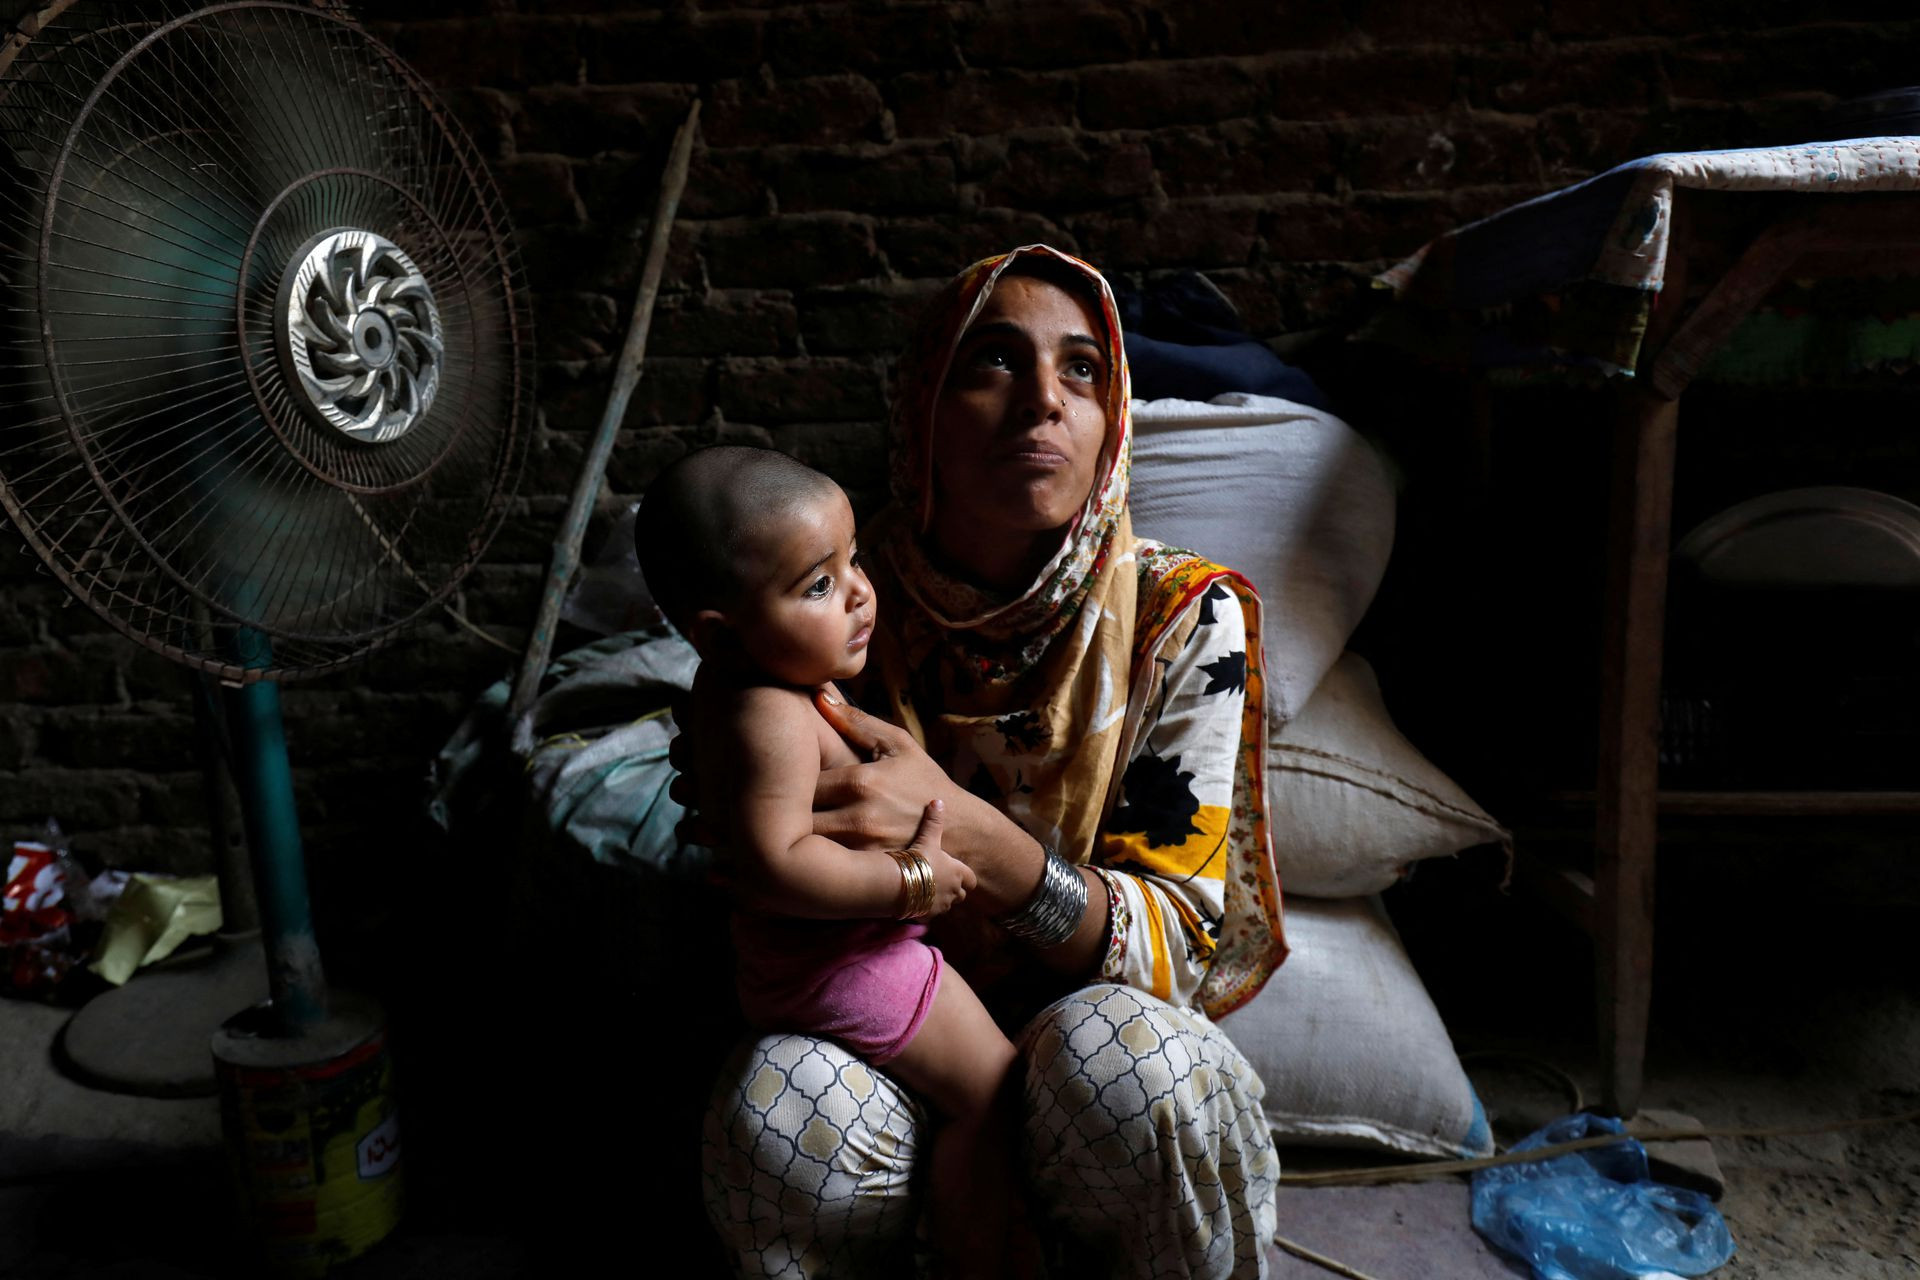 Razia 25 tuổi cùng con gái nhỏ ngồi trước quạt để giải nhiệt ở Jacobabad. Ảnh: Reuters.